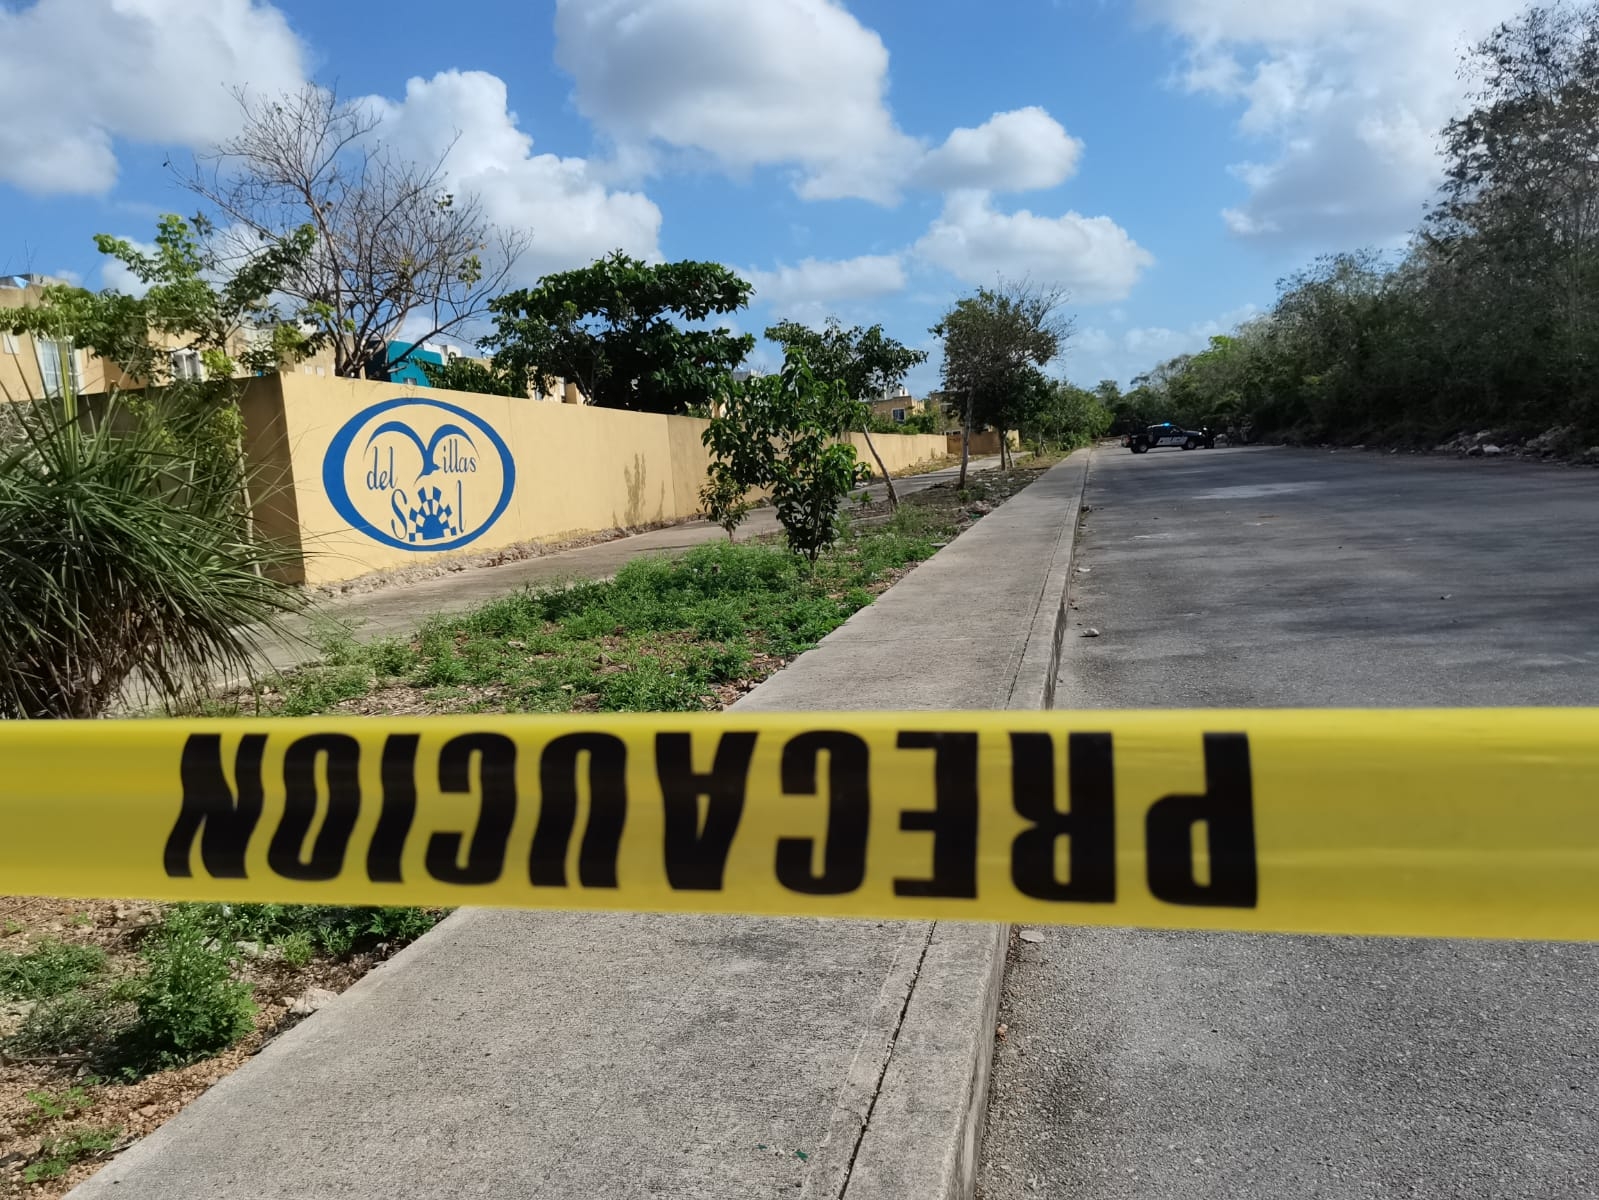 Hallan cuatro cuerpos presuntamente desmembrados en Playa del Carmen